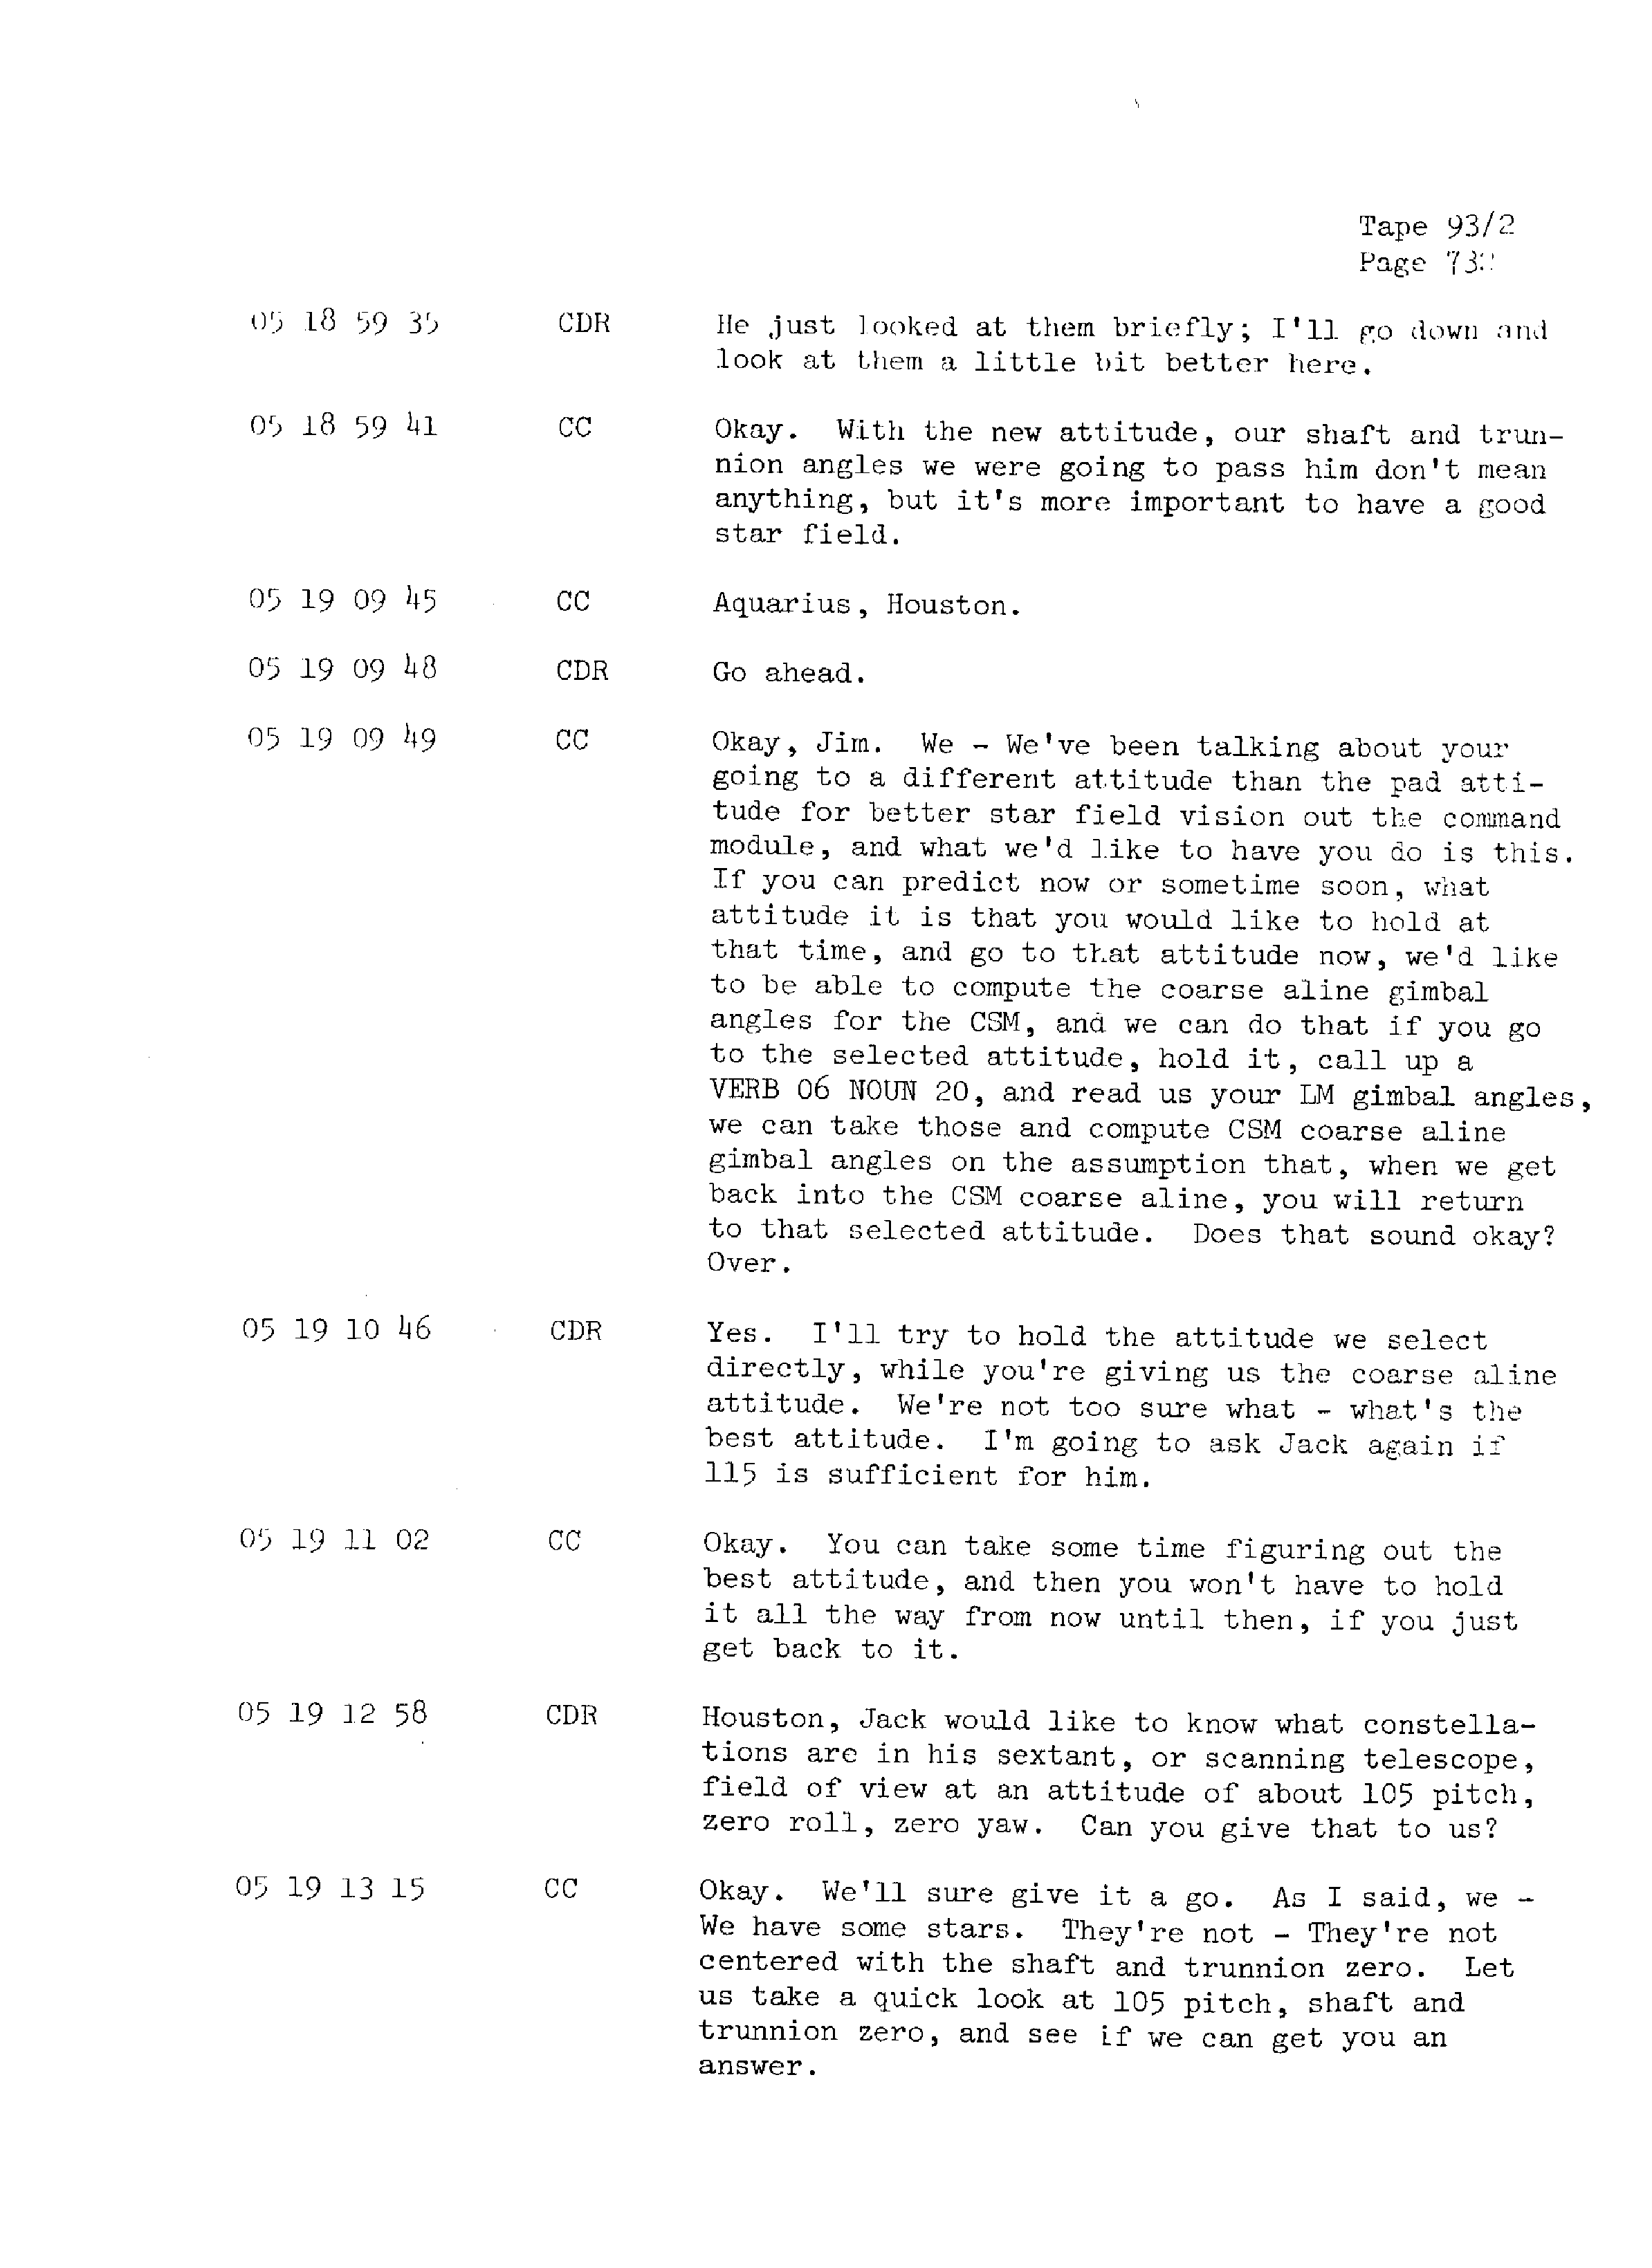 Page 739 of Apollo 13’s original transcript